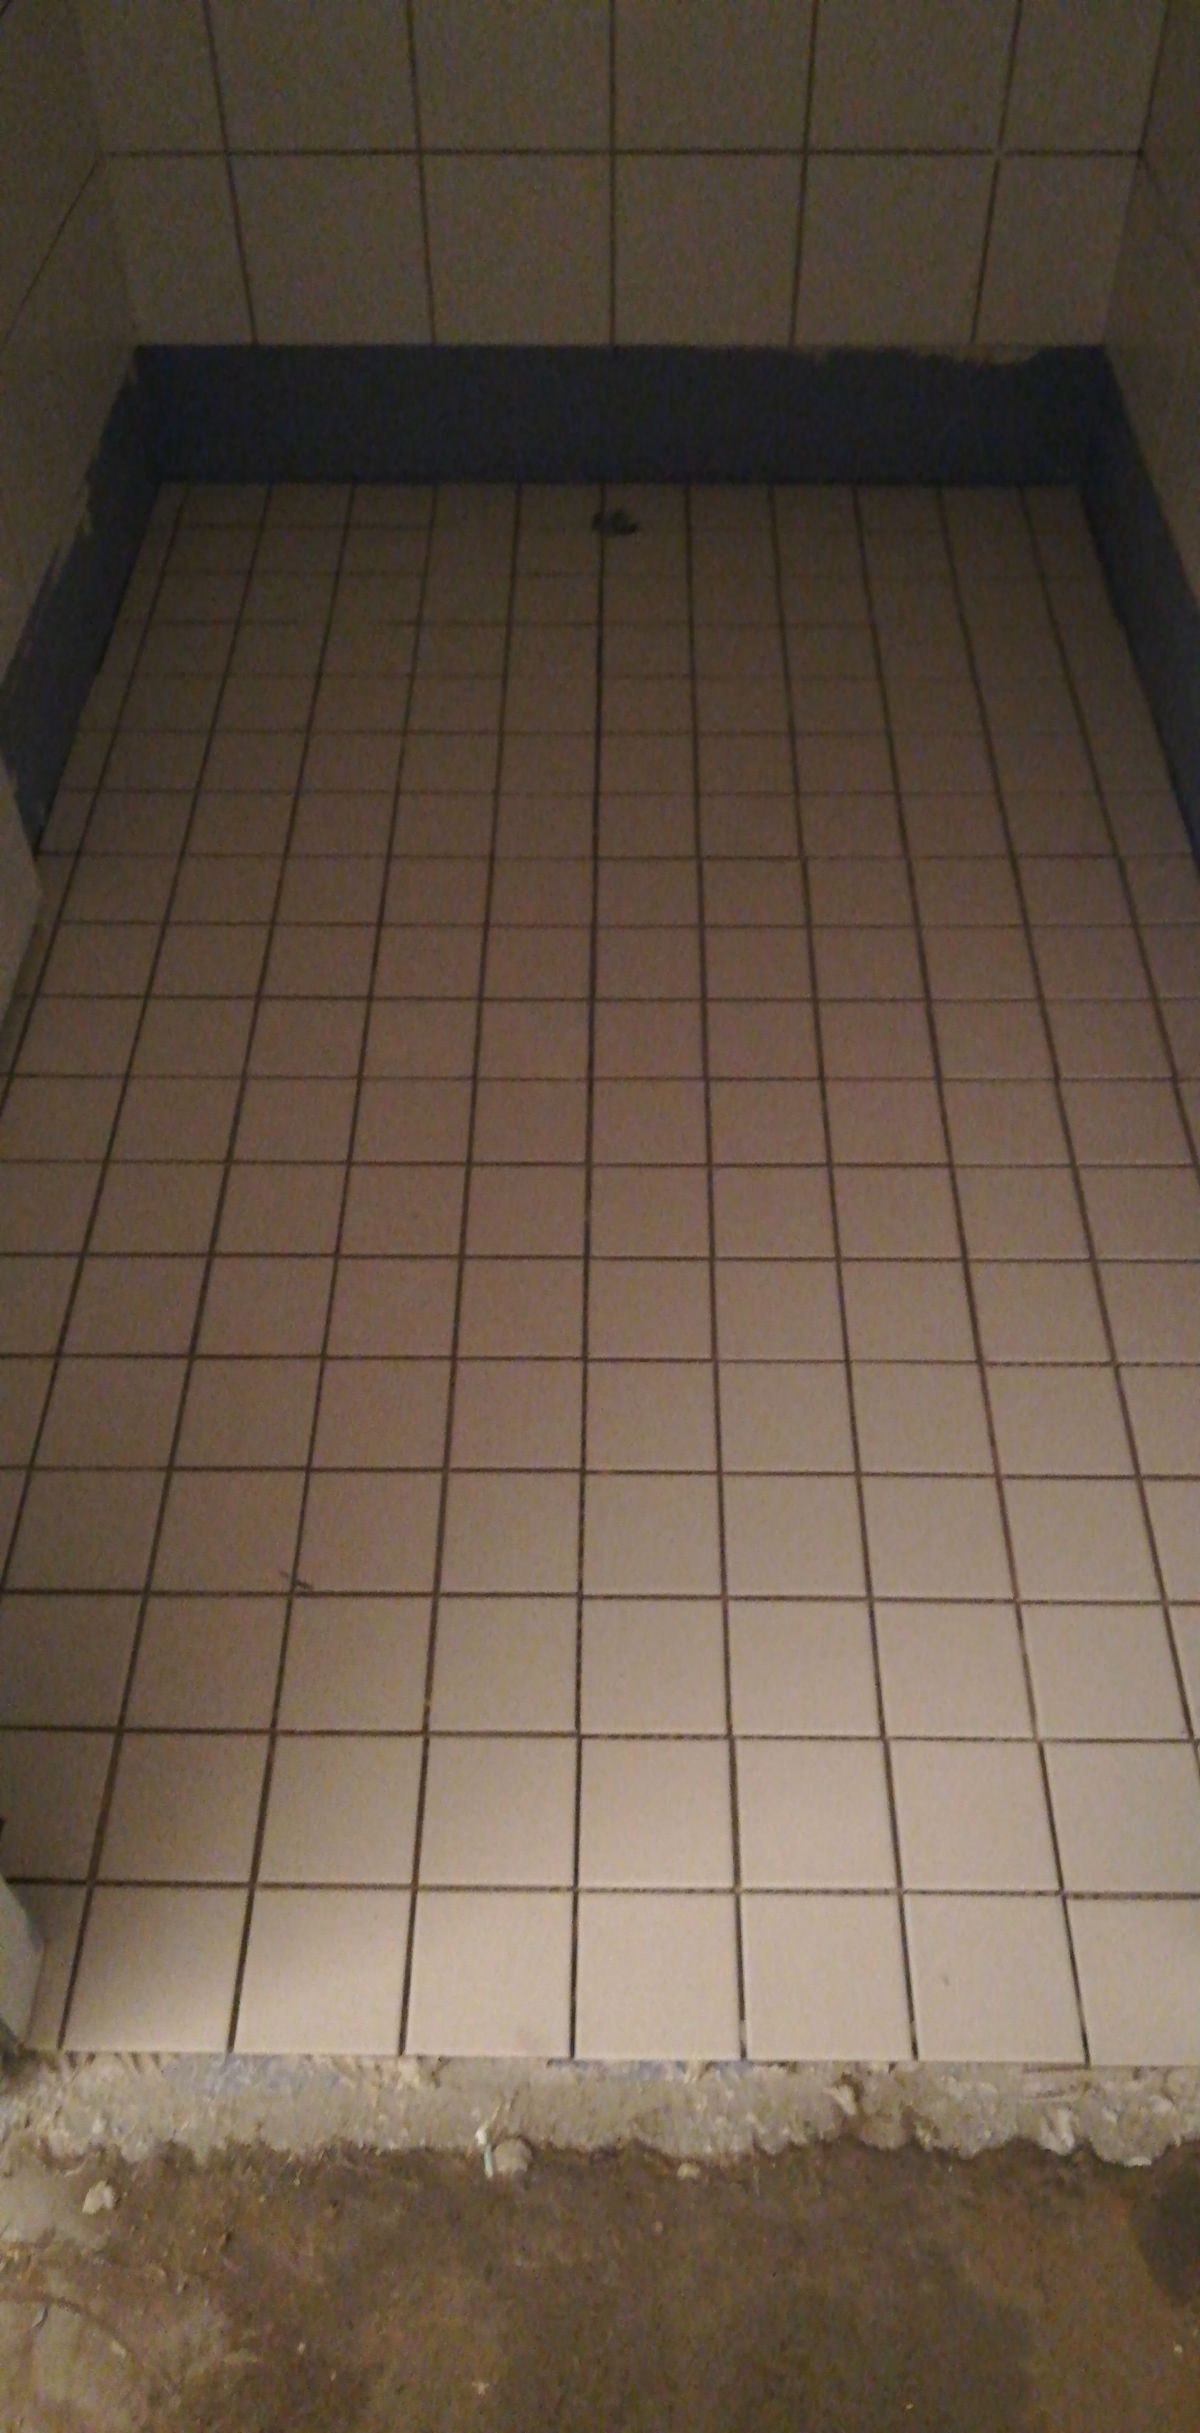 Laying tiles